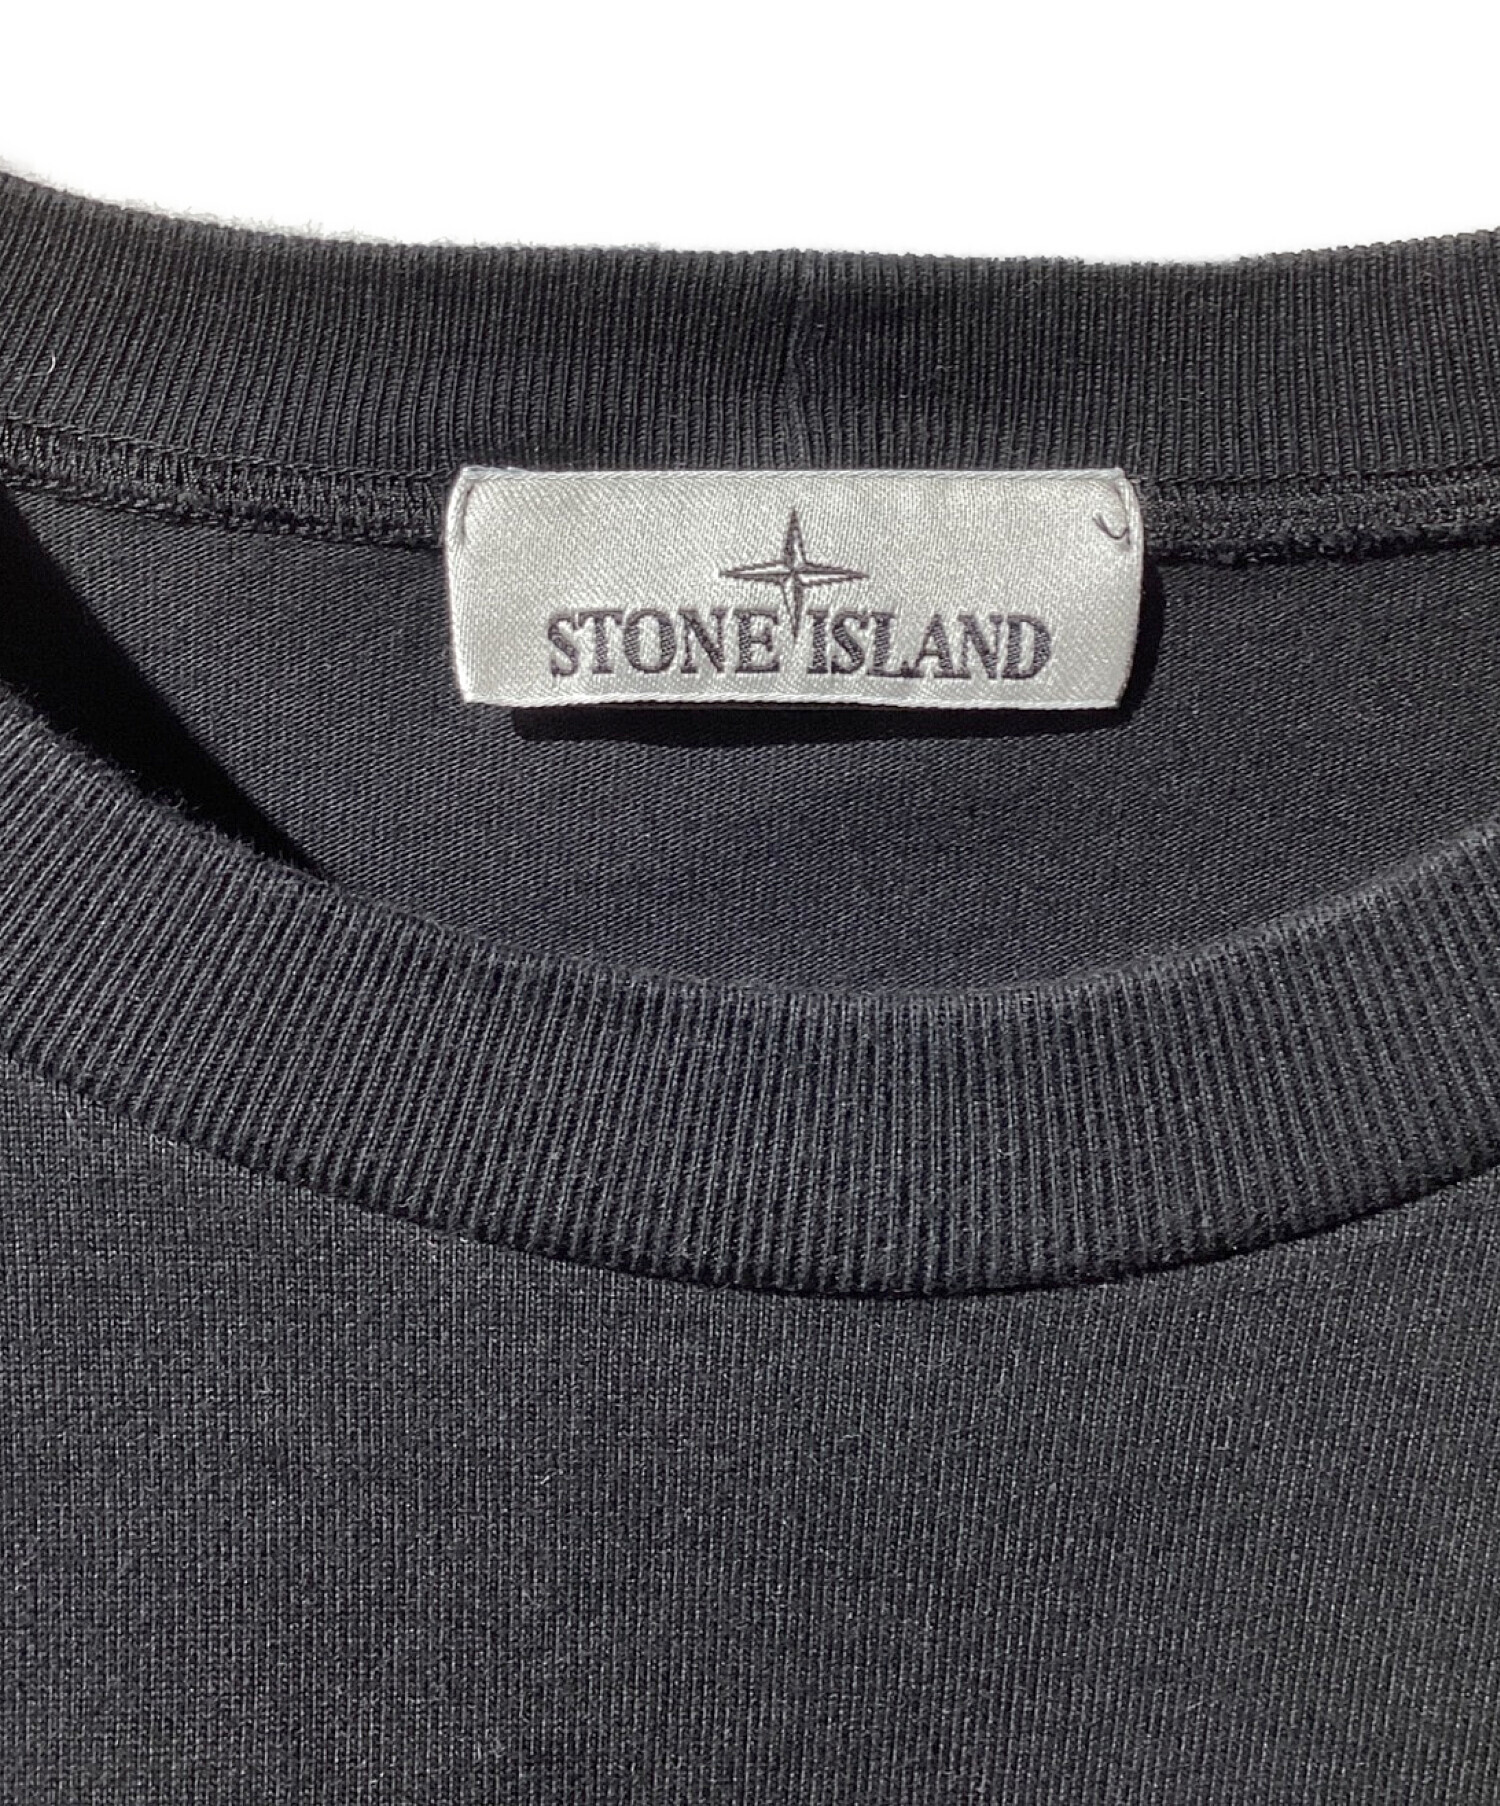 STONE ISLAND (ストーンアイランド) SWEAT-SHIRT/ガーメントダイ スウェット ロンT ブラック サイズ:XL